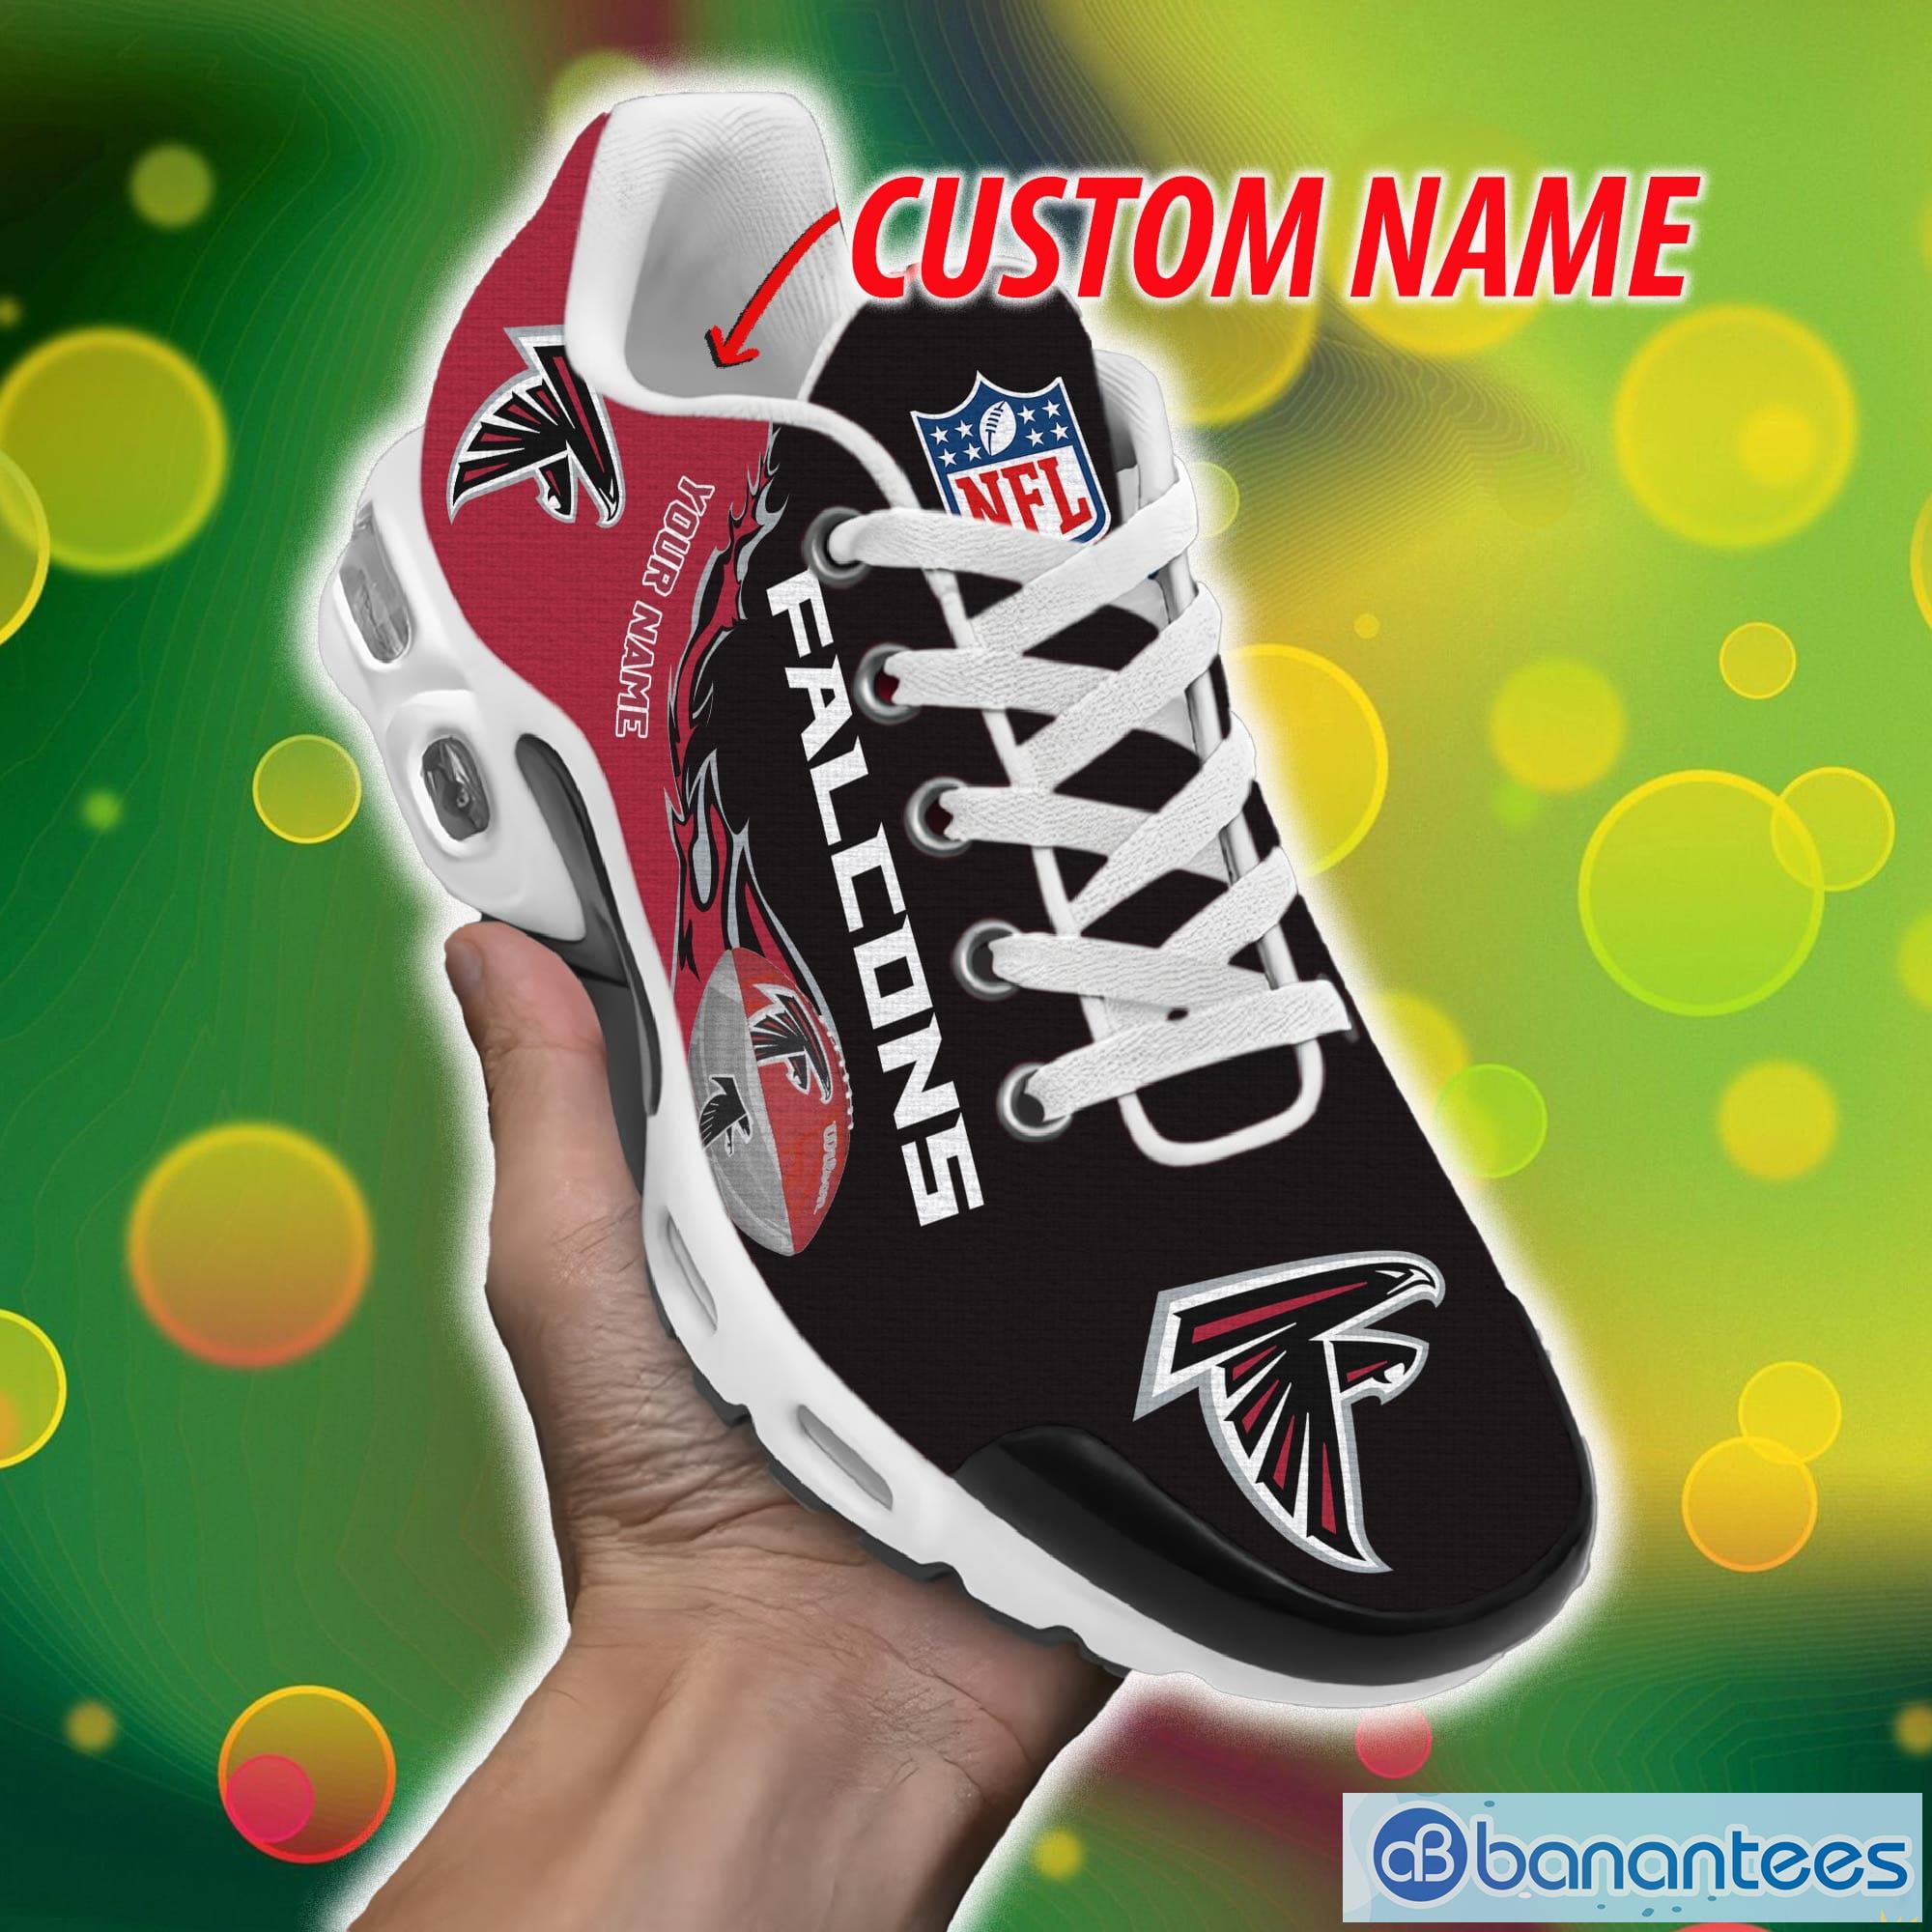 Arizona Cardinals NFL Big Logo Air Jordan 13 Shoes For Men And Women -  Banantees